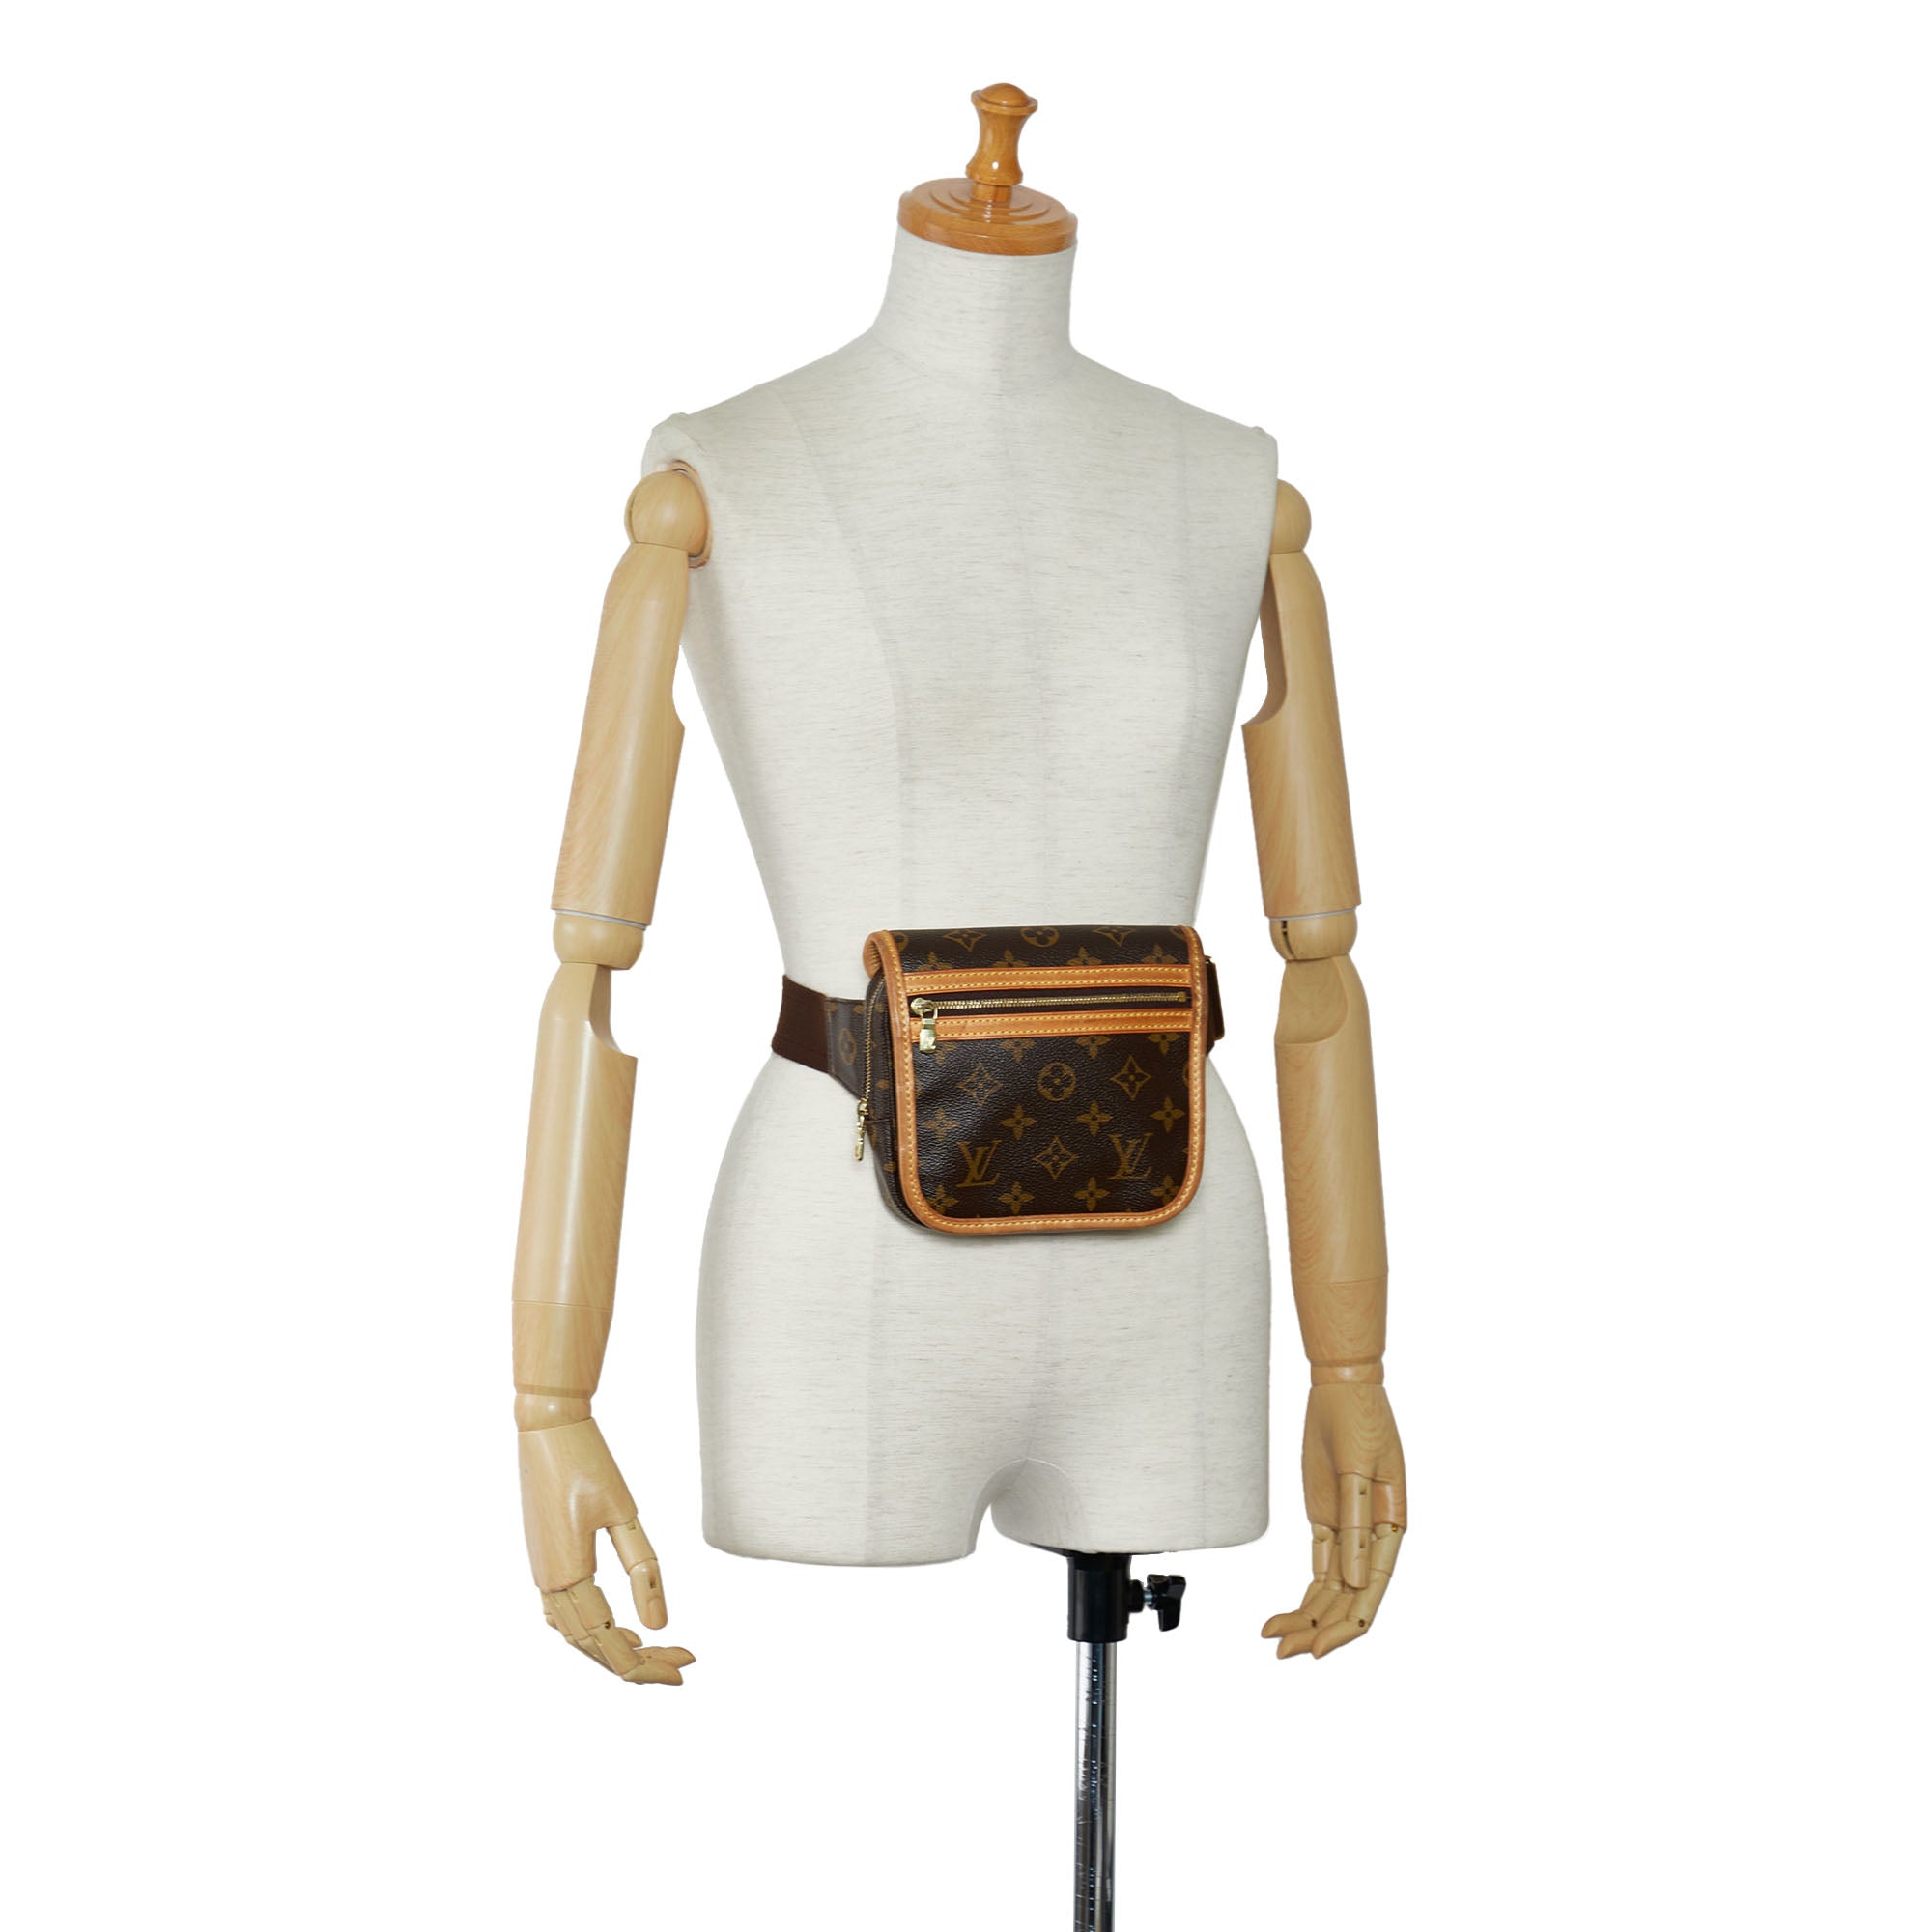 Louis+Vuitton+Bosphore+Belt+Bag+Brown+Canvas for sale online